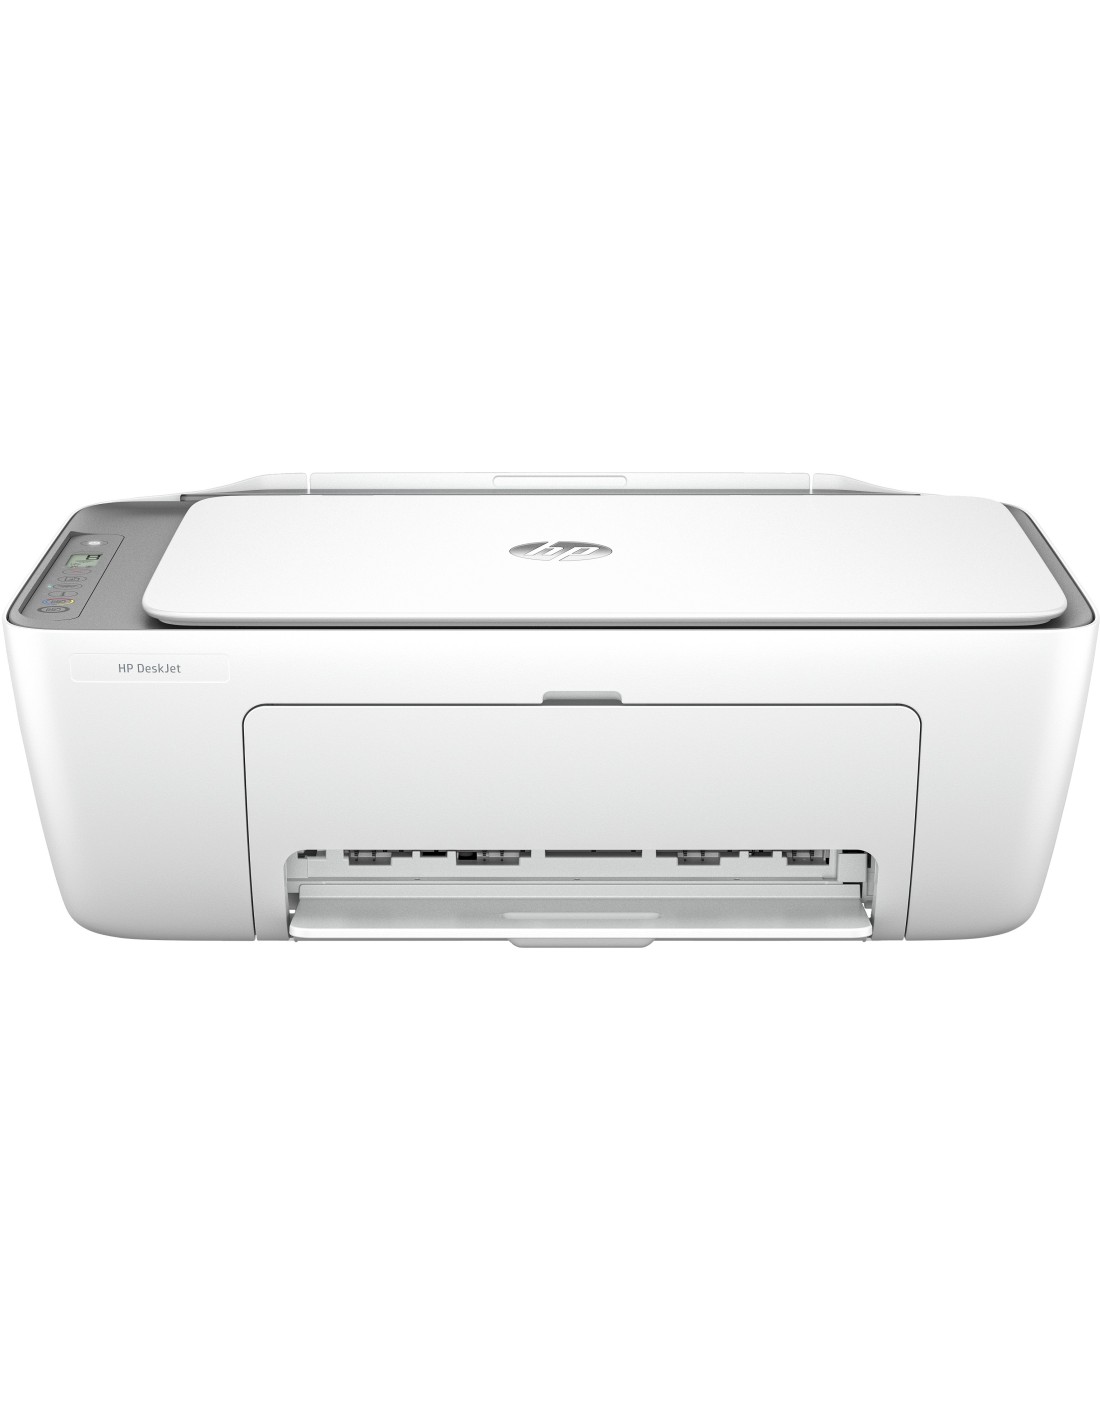 Impresora de Tinta, Copiadora y Escáner Multifunción – HP Scanner